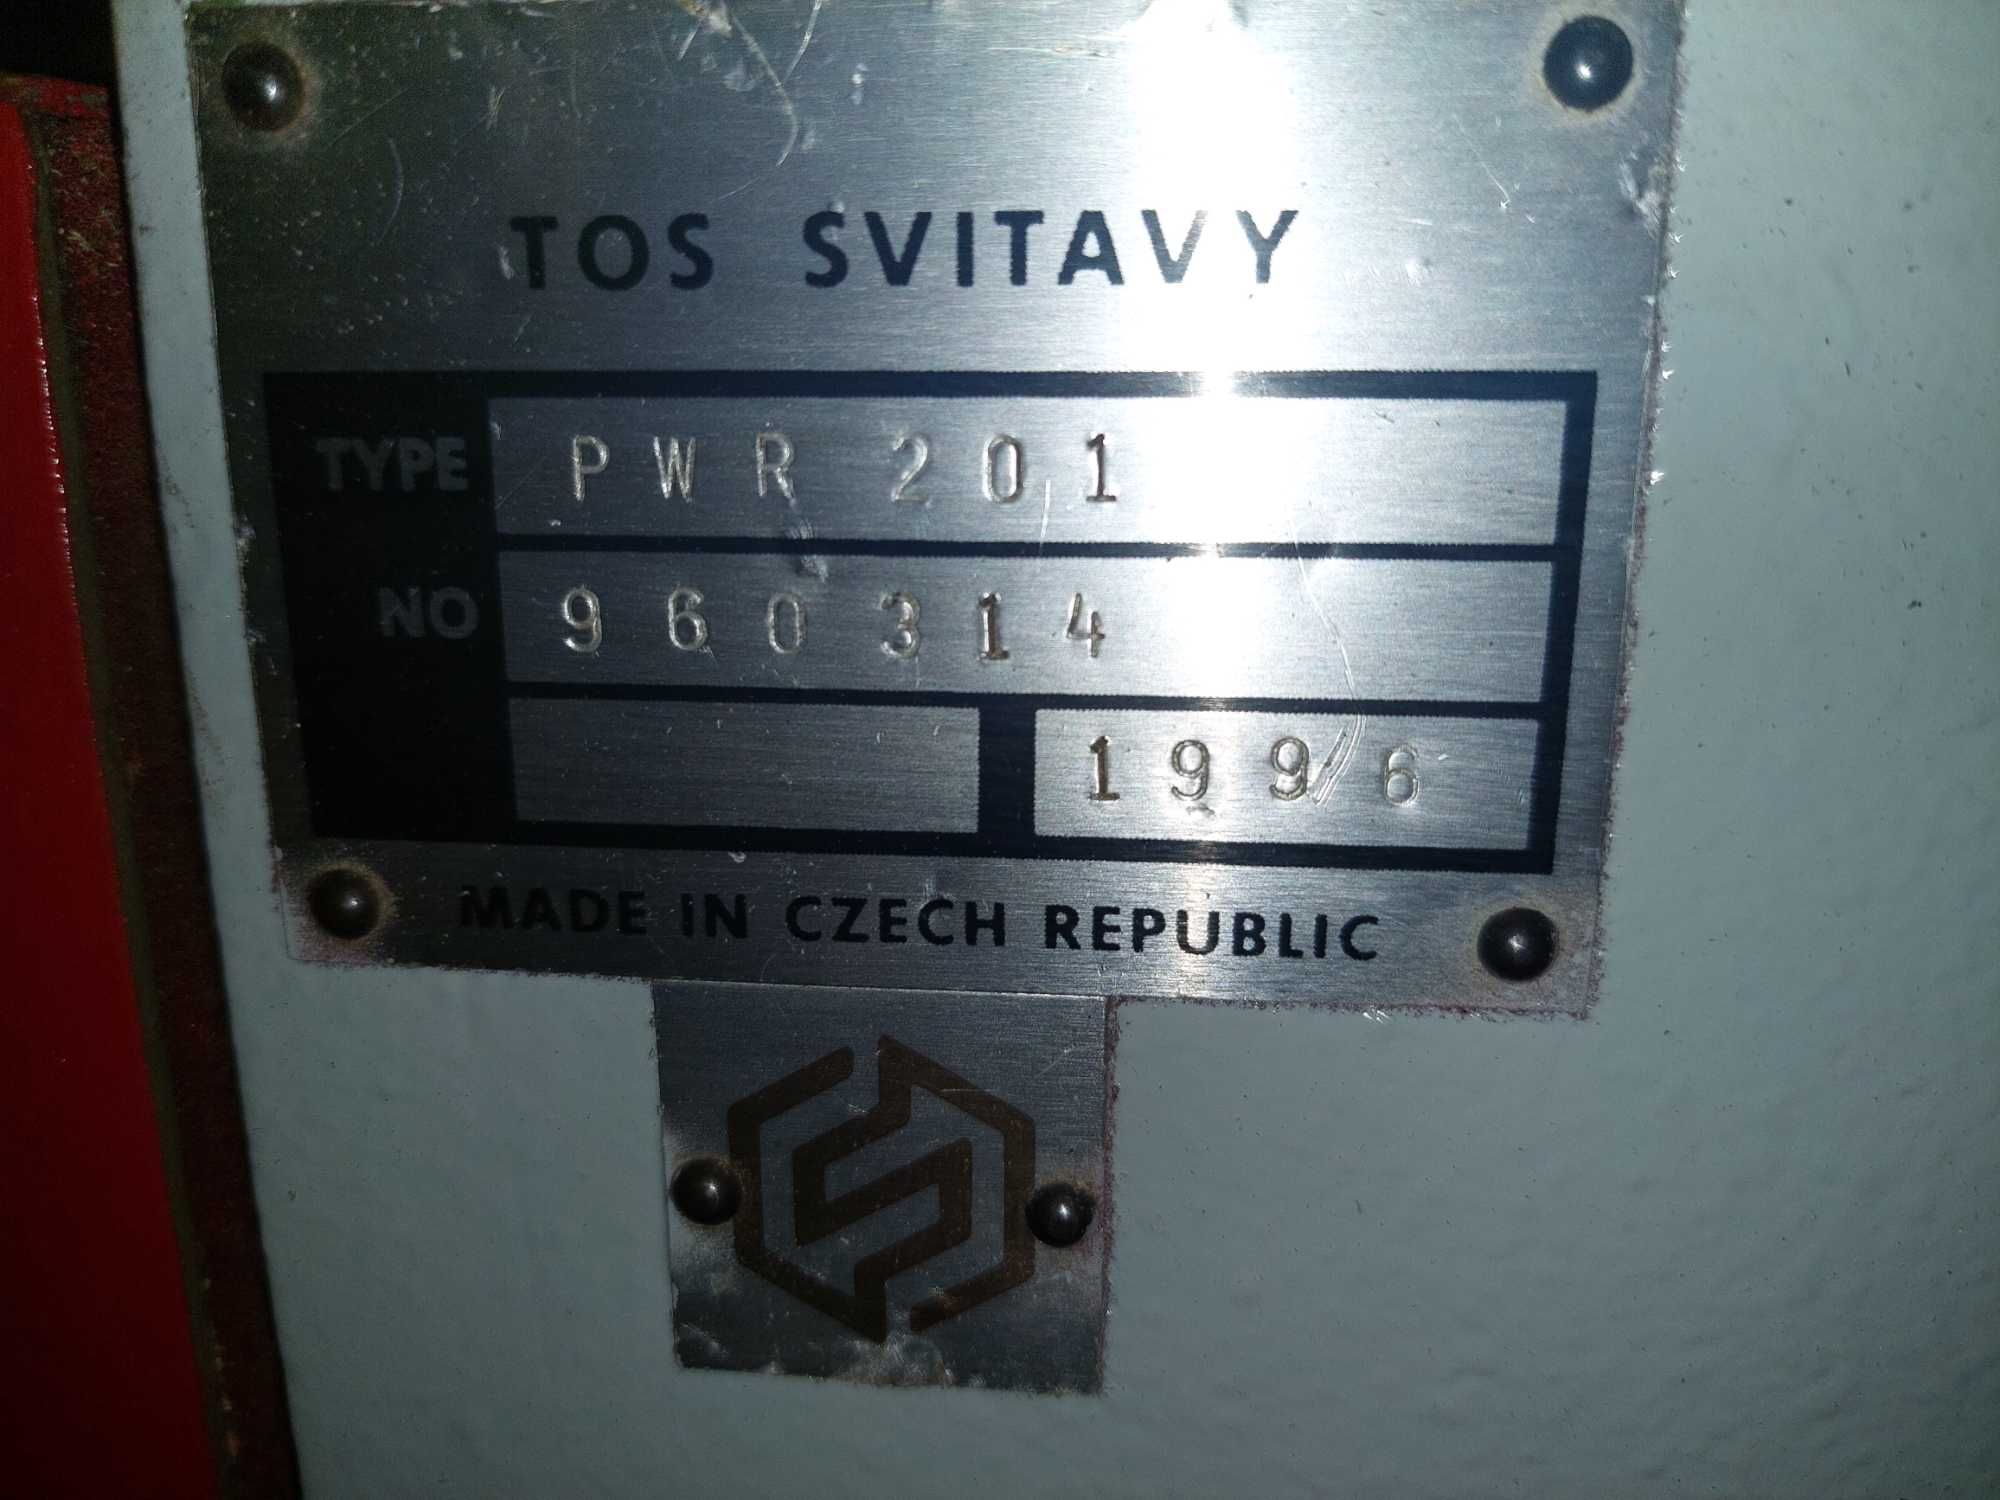 Wielopiła gąsienicowa TOS SVITAVY PWR 201 240/120